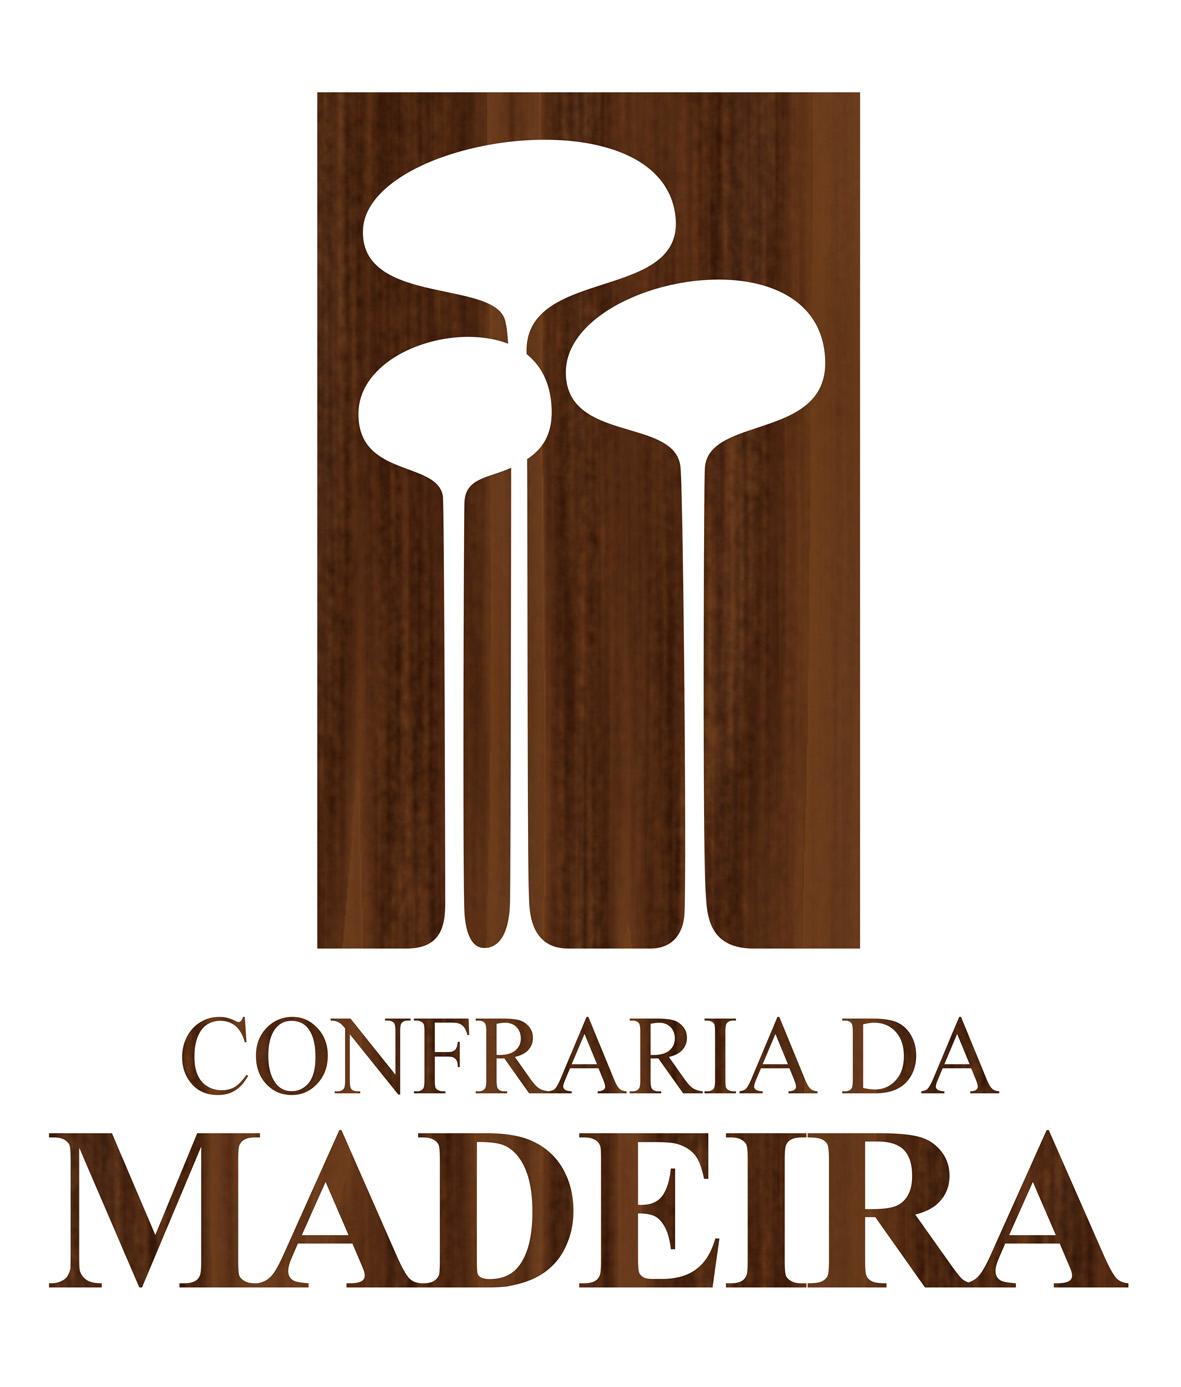 Confraria da Madeira - Cursos em Marcenaria